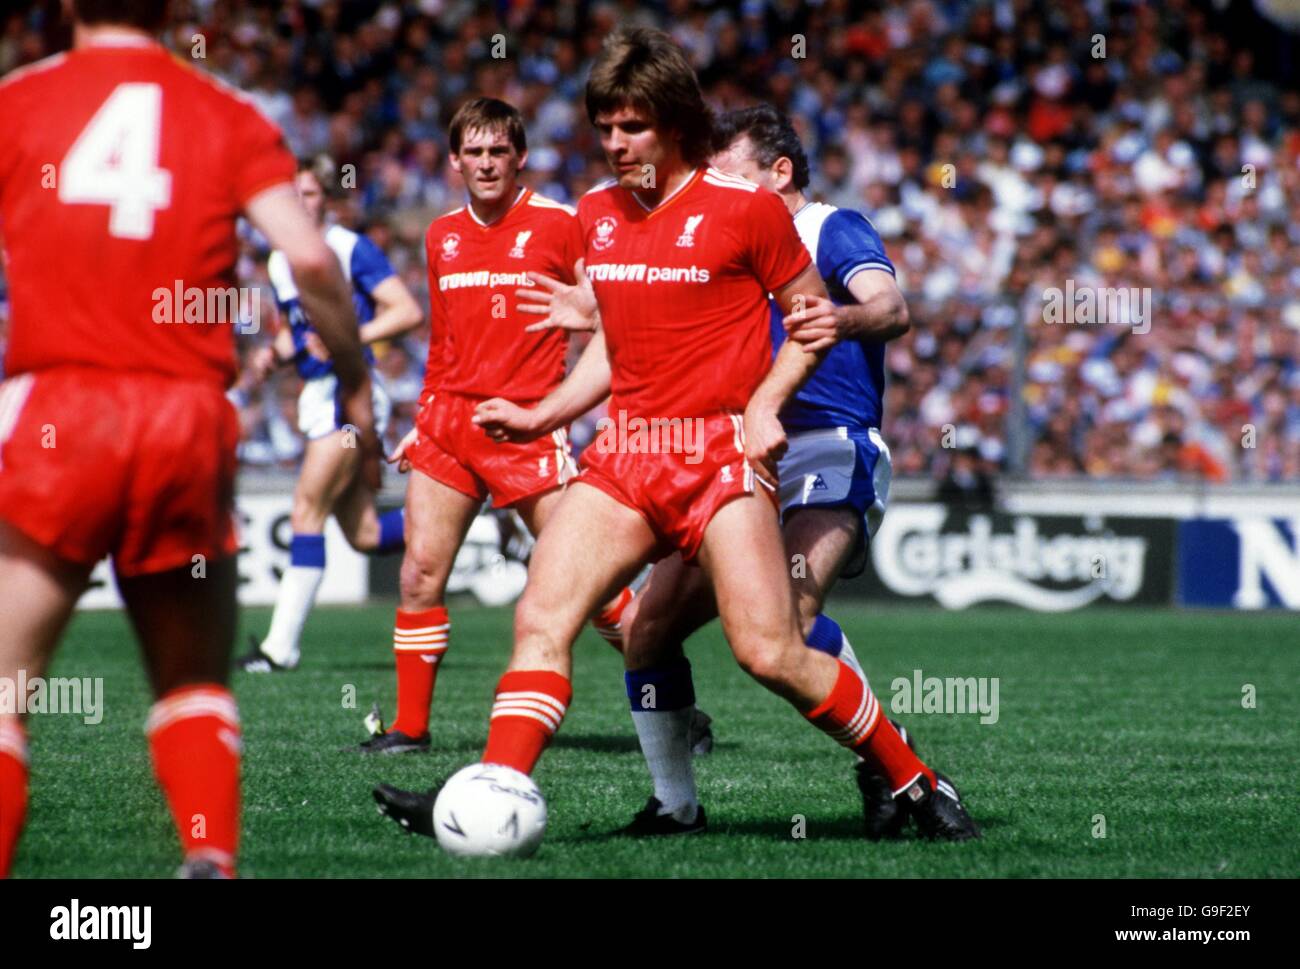 Football - finale de la coupe FA - Everton contre Liverpool.Jan Molby (l), de Liverpool, protège le ballon contre Peter Reid (r), d'Everton. Banque D'Images